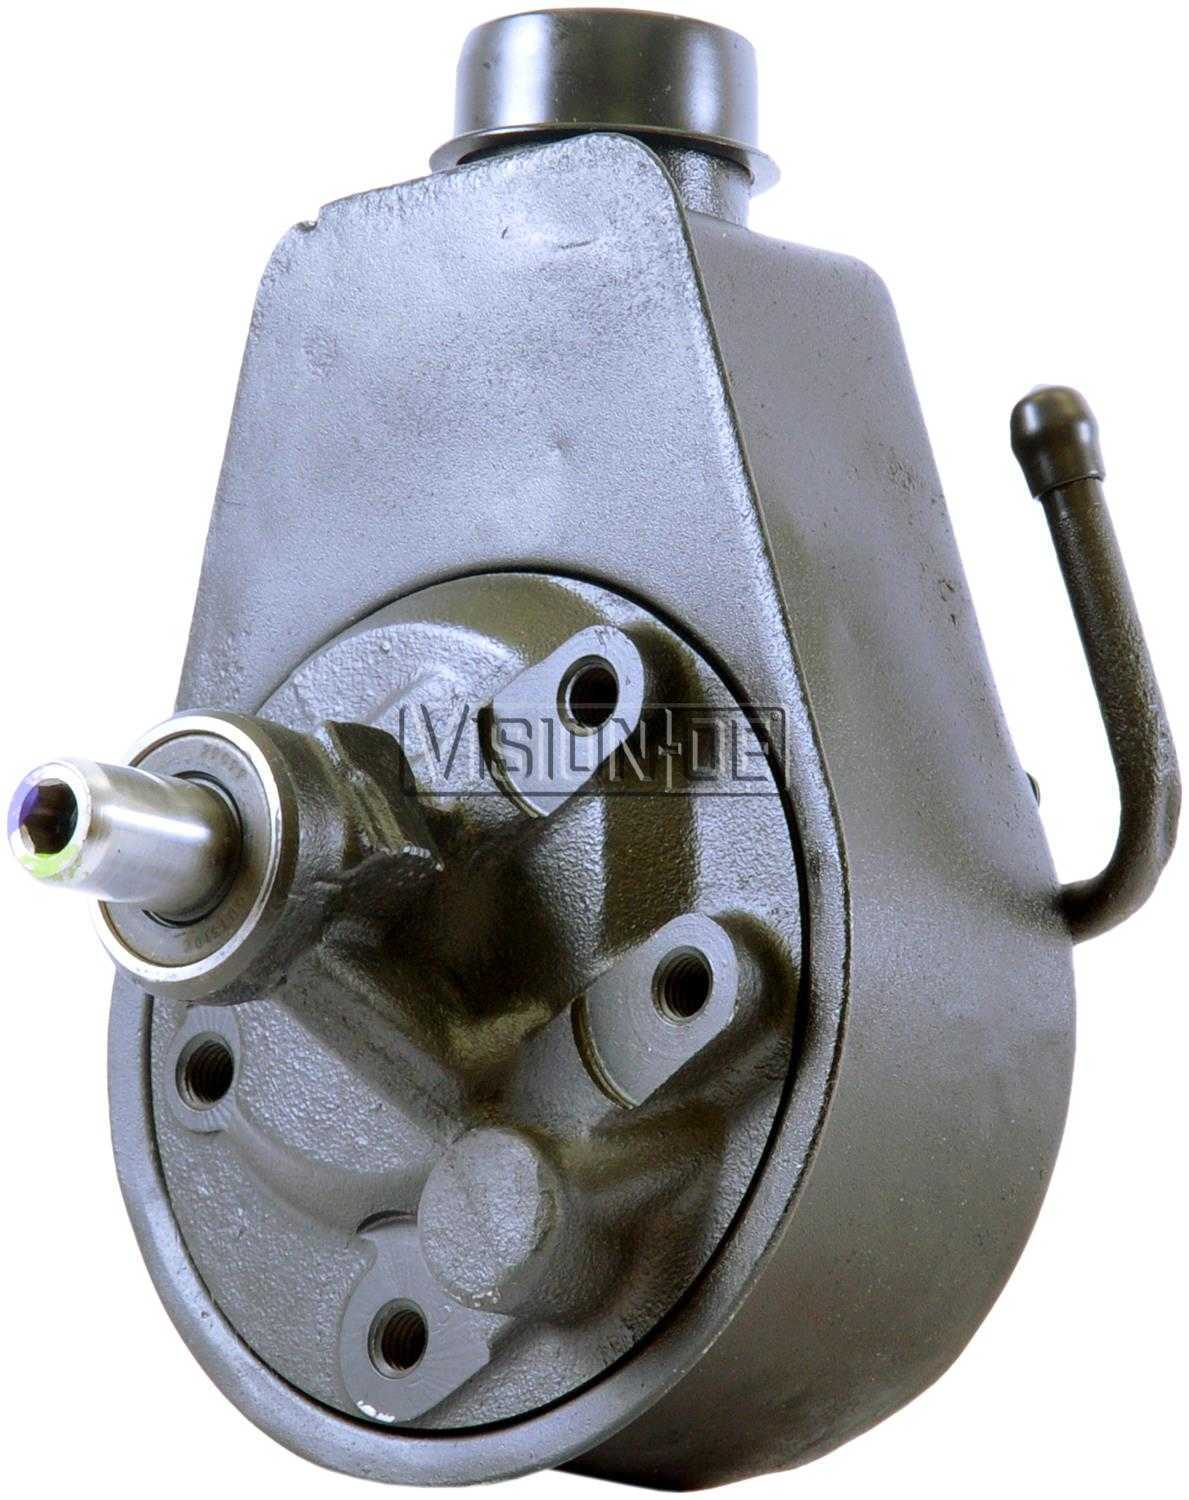 VISION-OE - Reman Power Steering Pump - VOE 731-2144